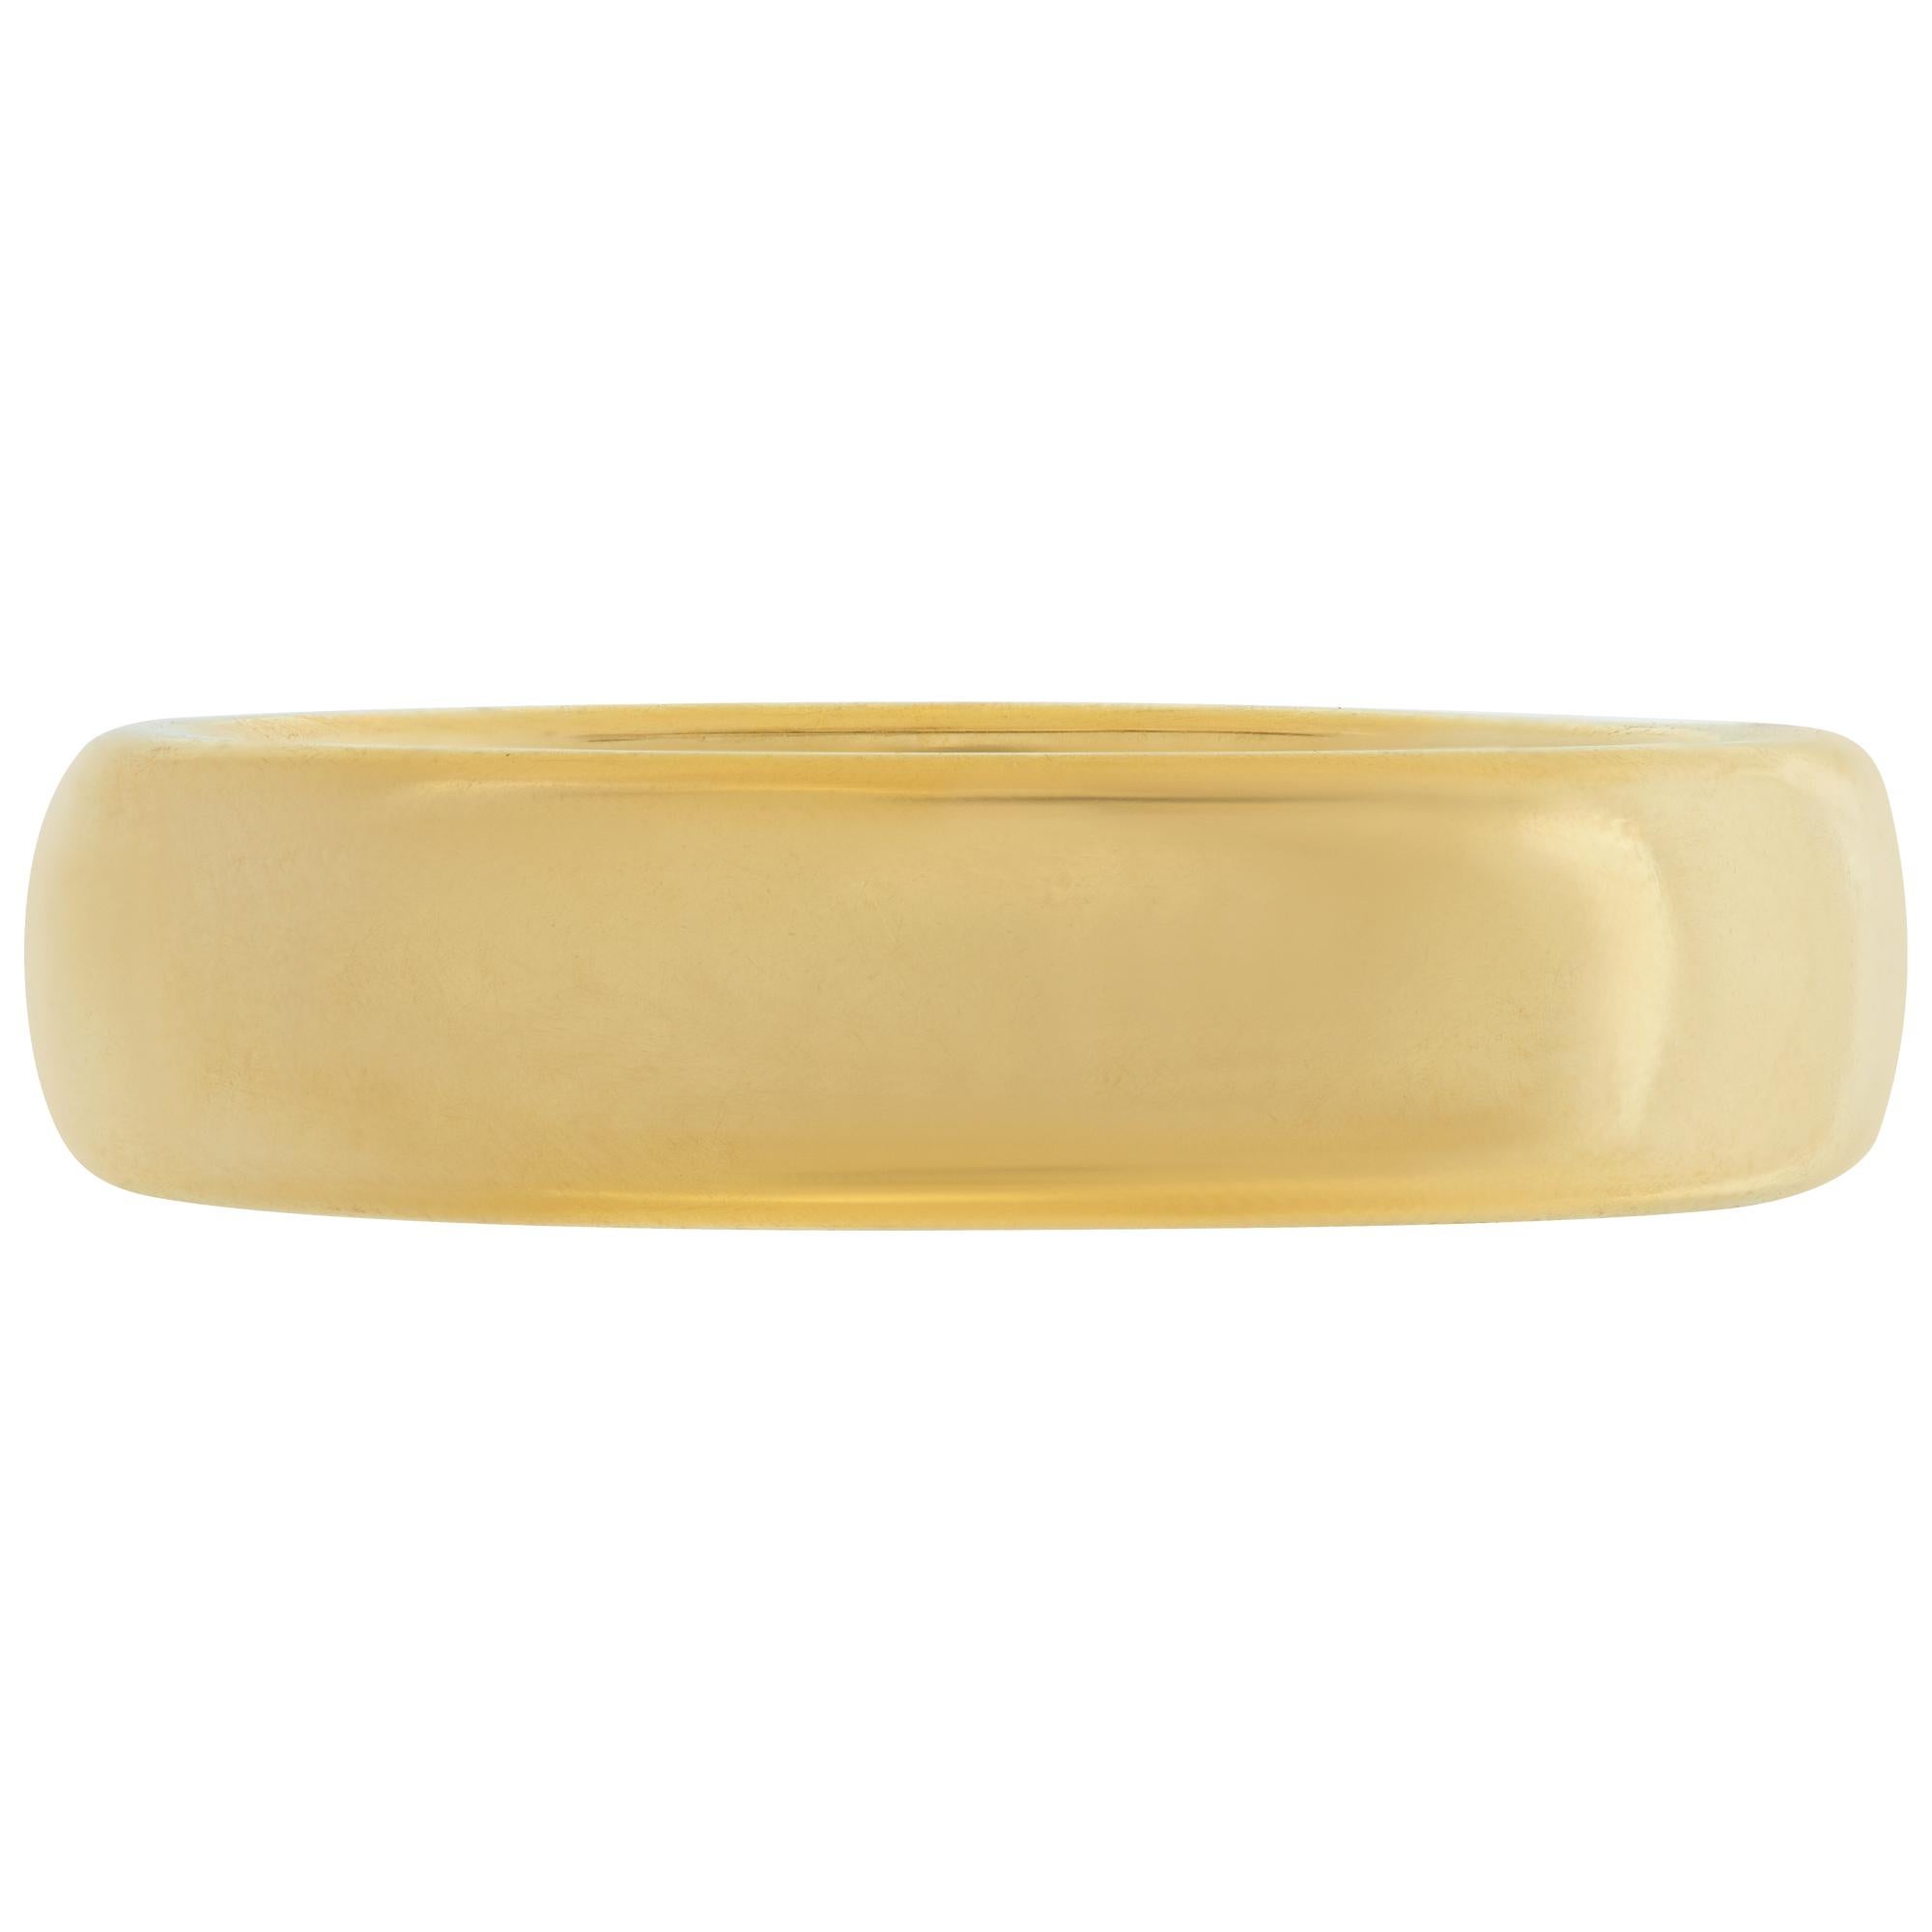 Tiffany & Co. Klassischer Ehering aus 18k Gelbgold, 4,5 mm breit. Größe 6.5 Dieser Ring von Tiffany & Co. hat derzeit die Größe 4. Einige Artikel können nach oben oder unten angepasst werden, bitte fragen Sie nach! Er wiegt 3,5 Pennygewichte und ist